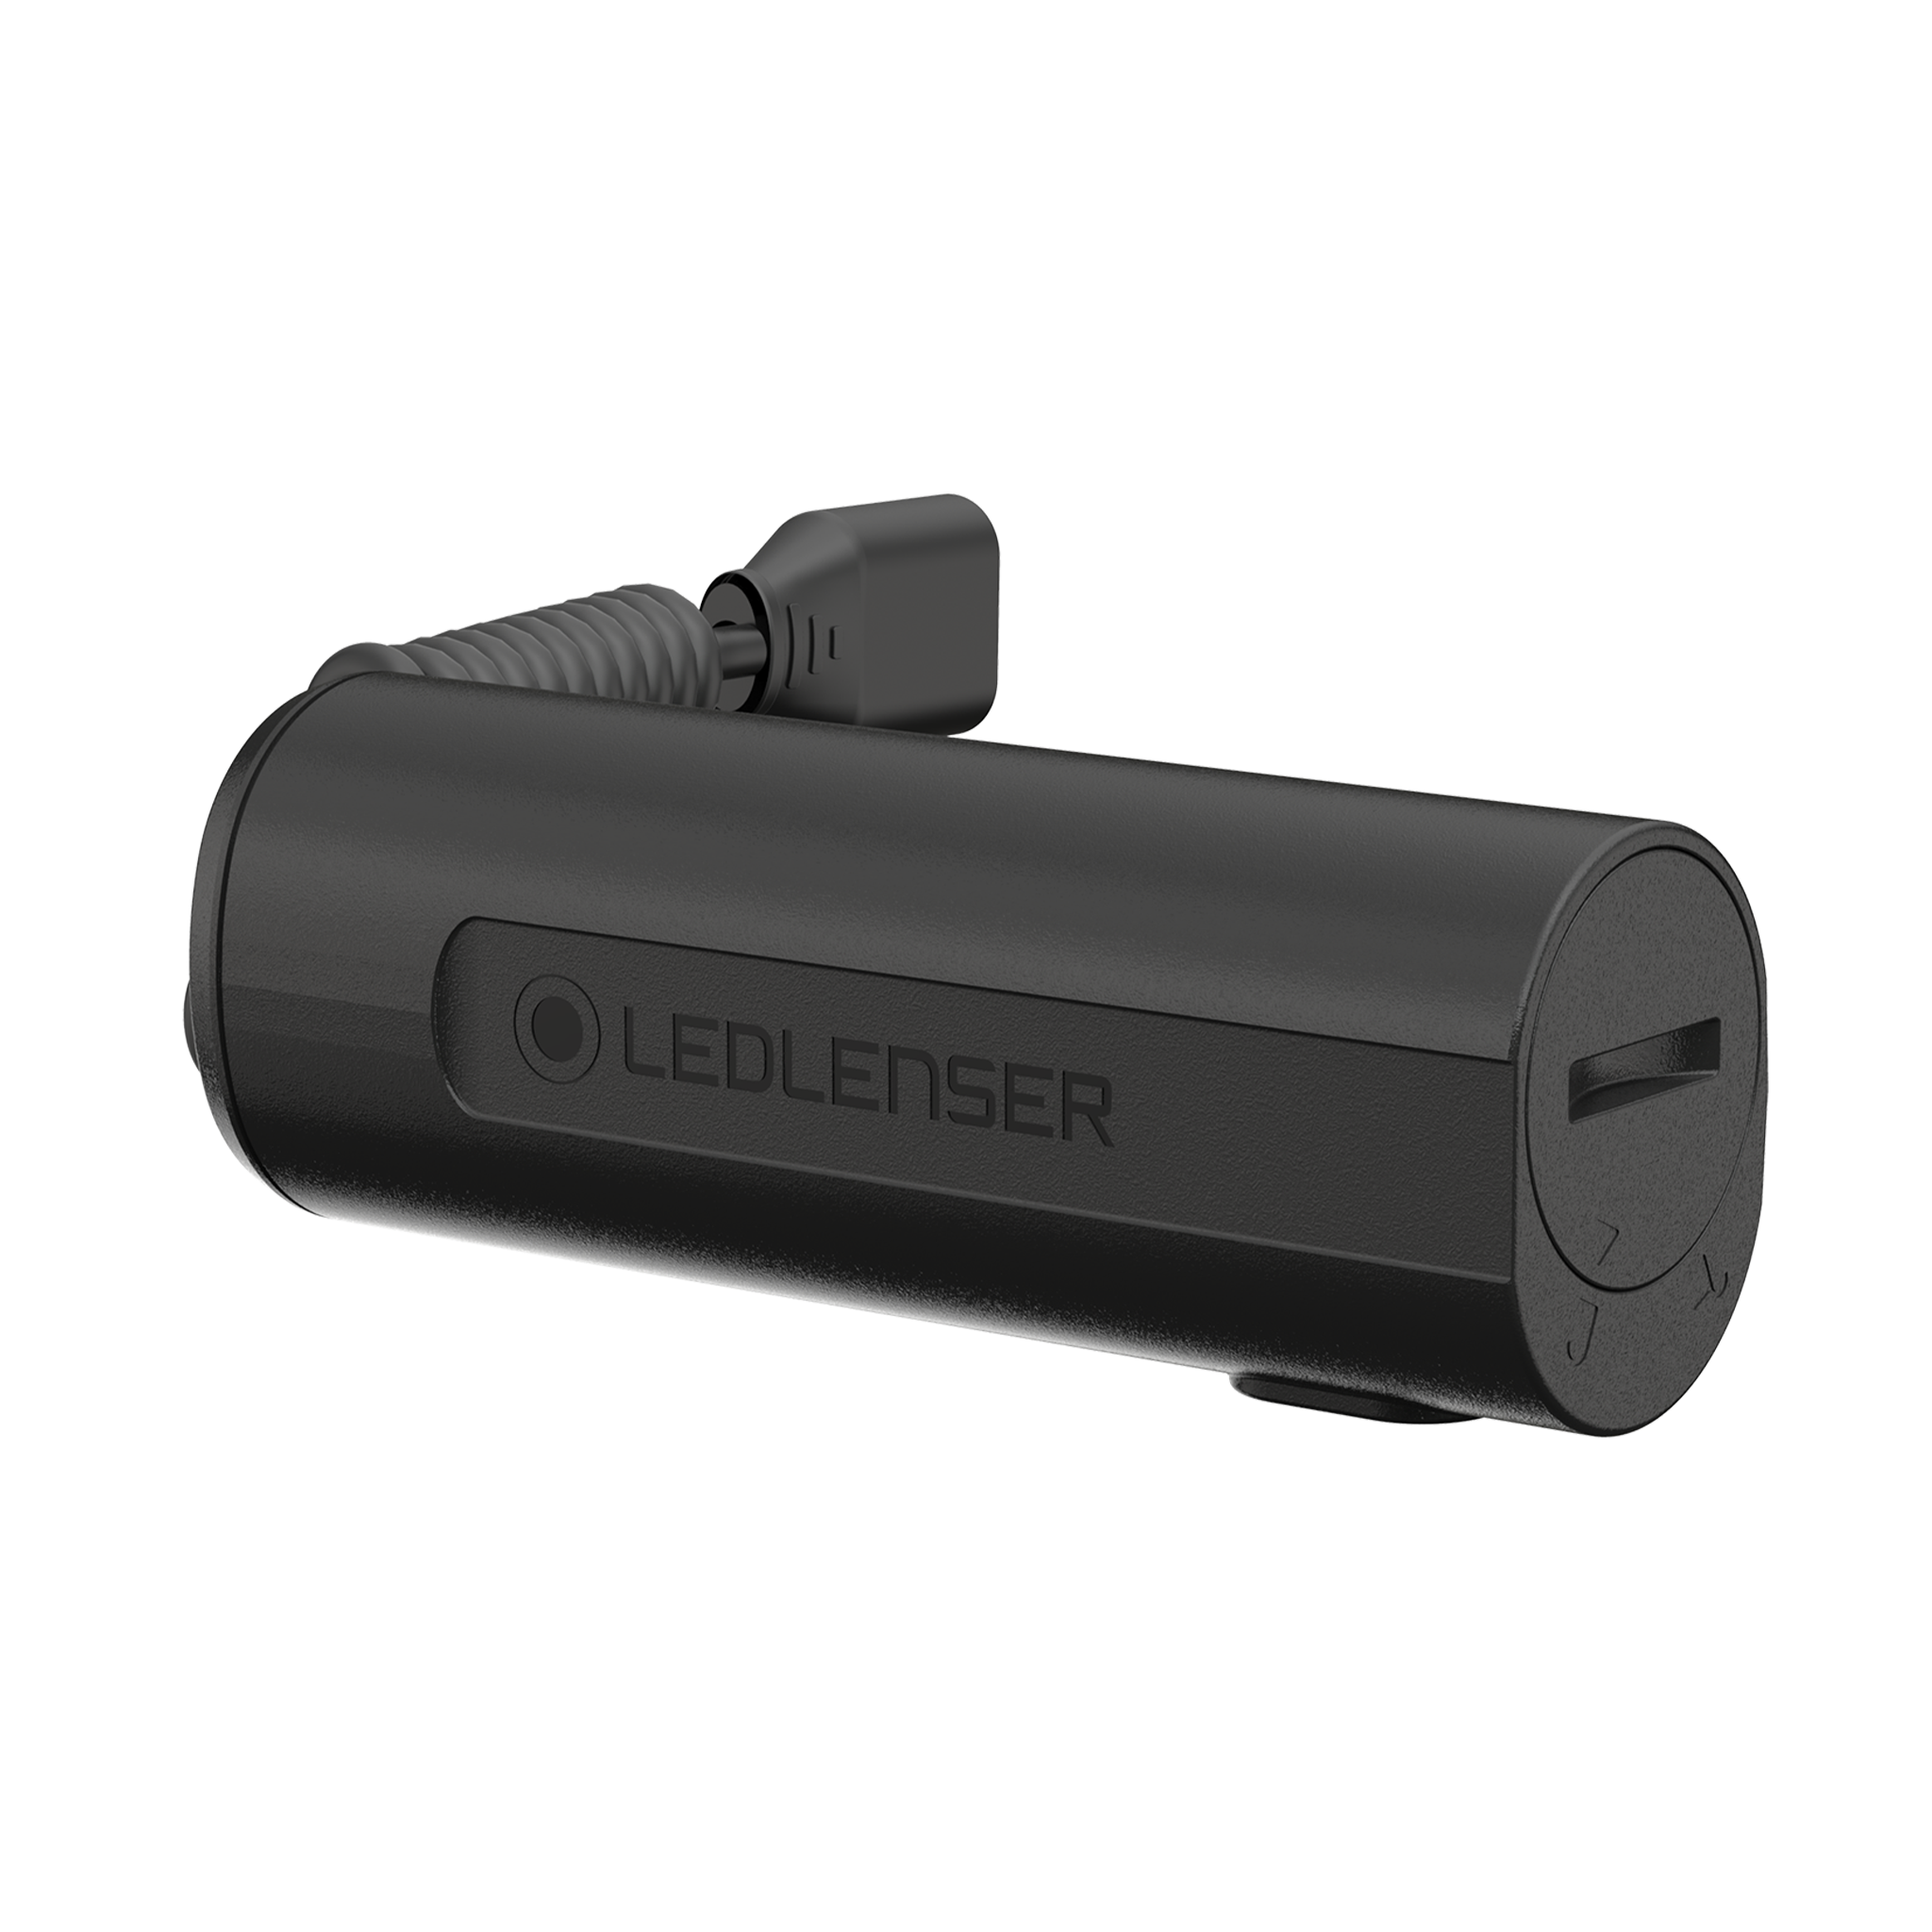 LEDLENSER 21700 li-ion batterie rechargeable 4800mah pour p7r  core/work/uv/signature, h7r core/work/signature